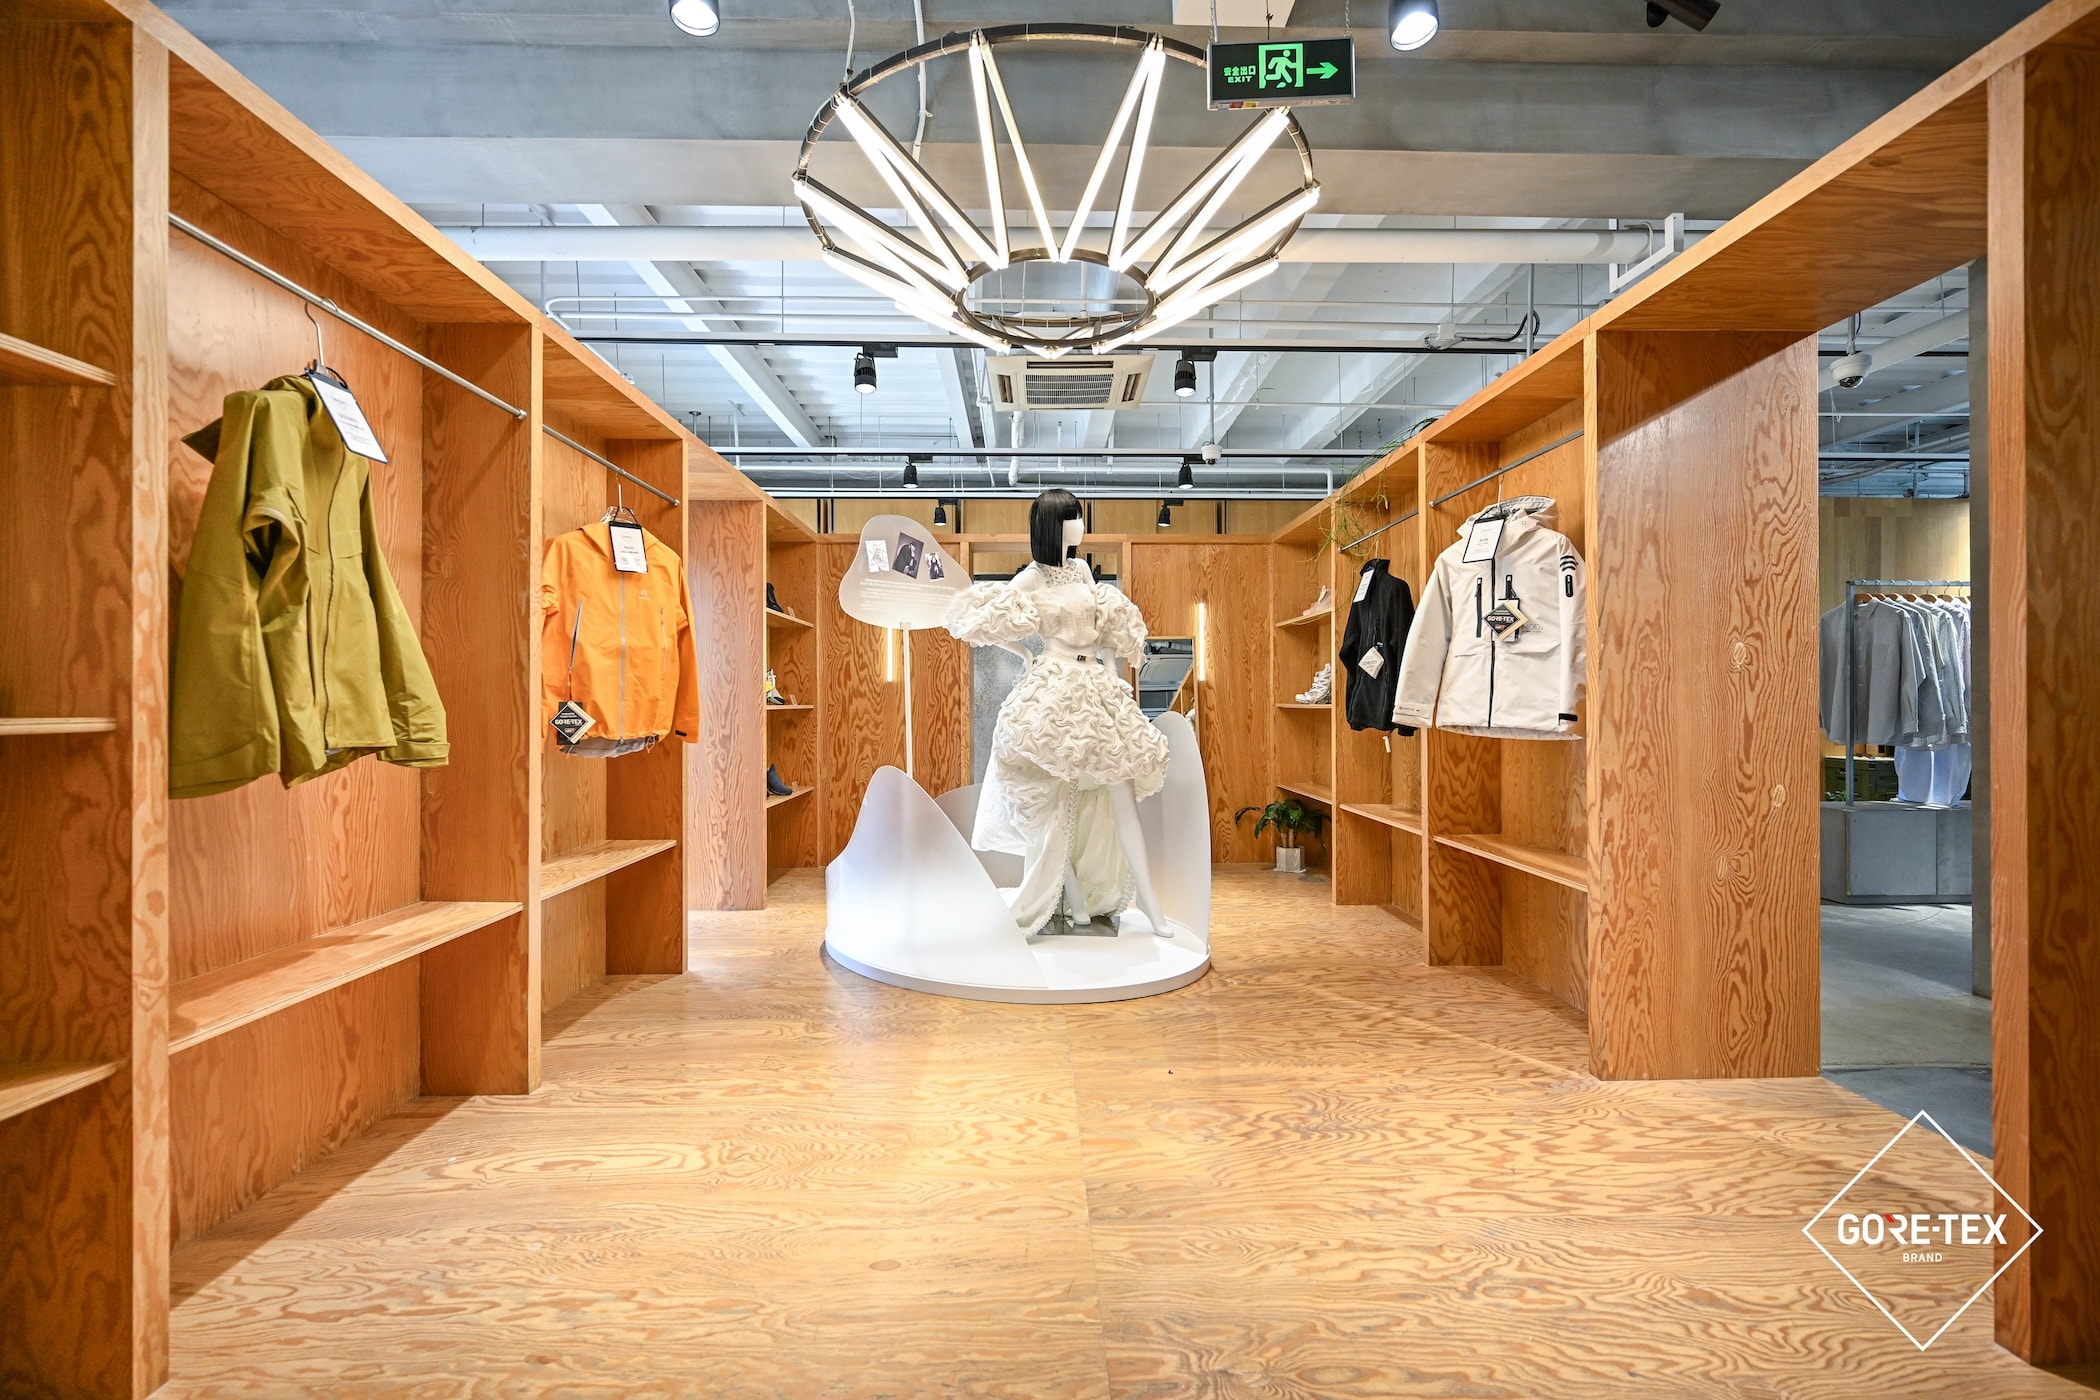 走进「时尚新生——GORE-TEX 产品的第二生命」上海展览